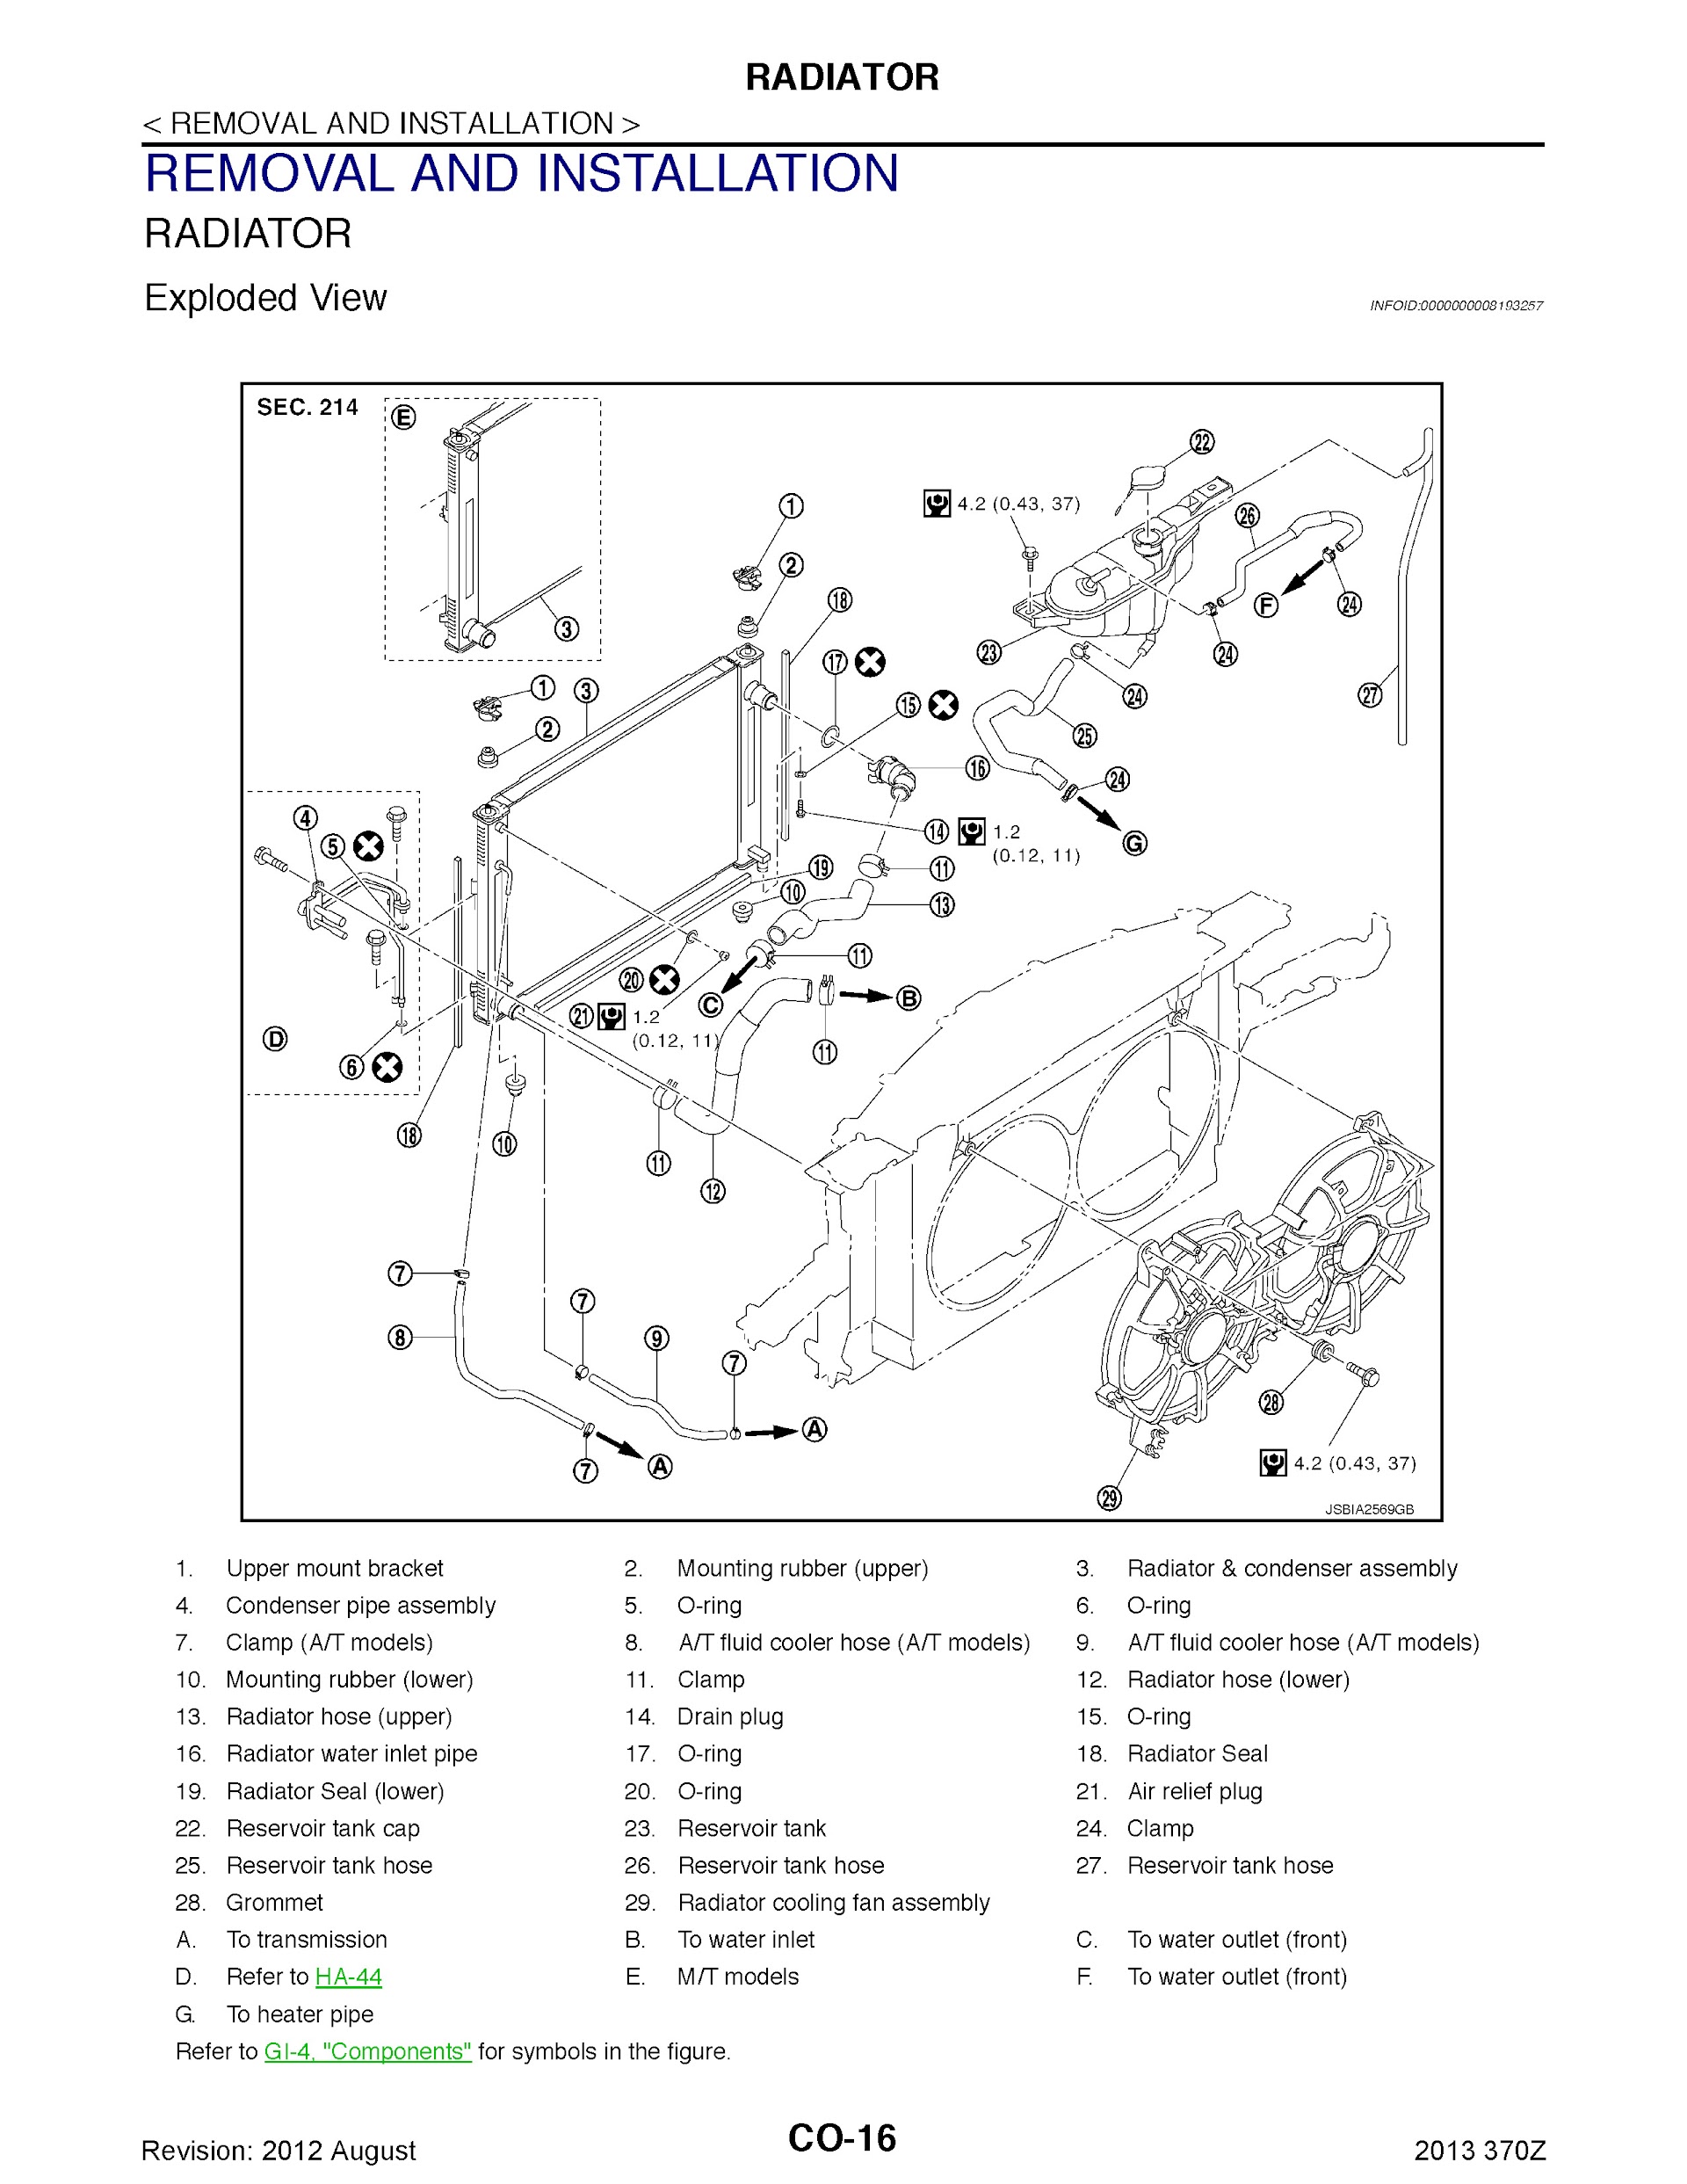 2013 Nissan 370Z Repair Manual, Radiator